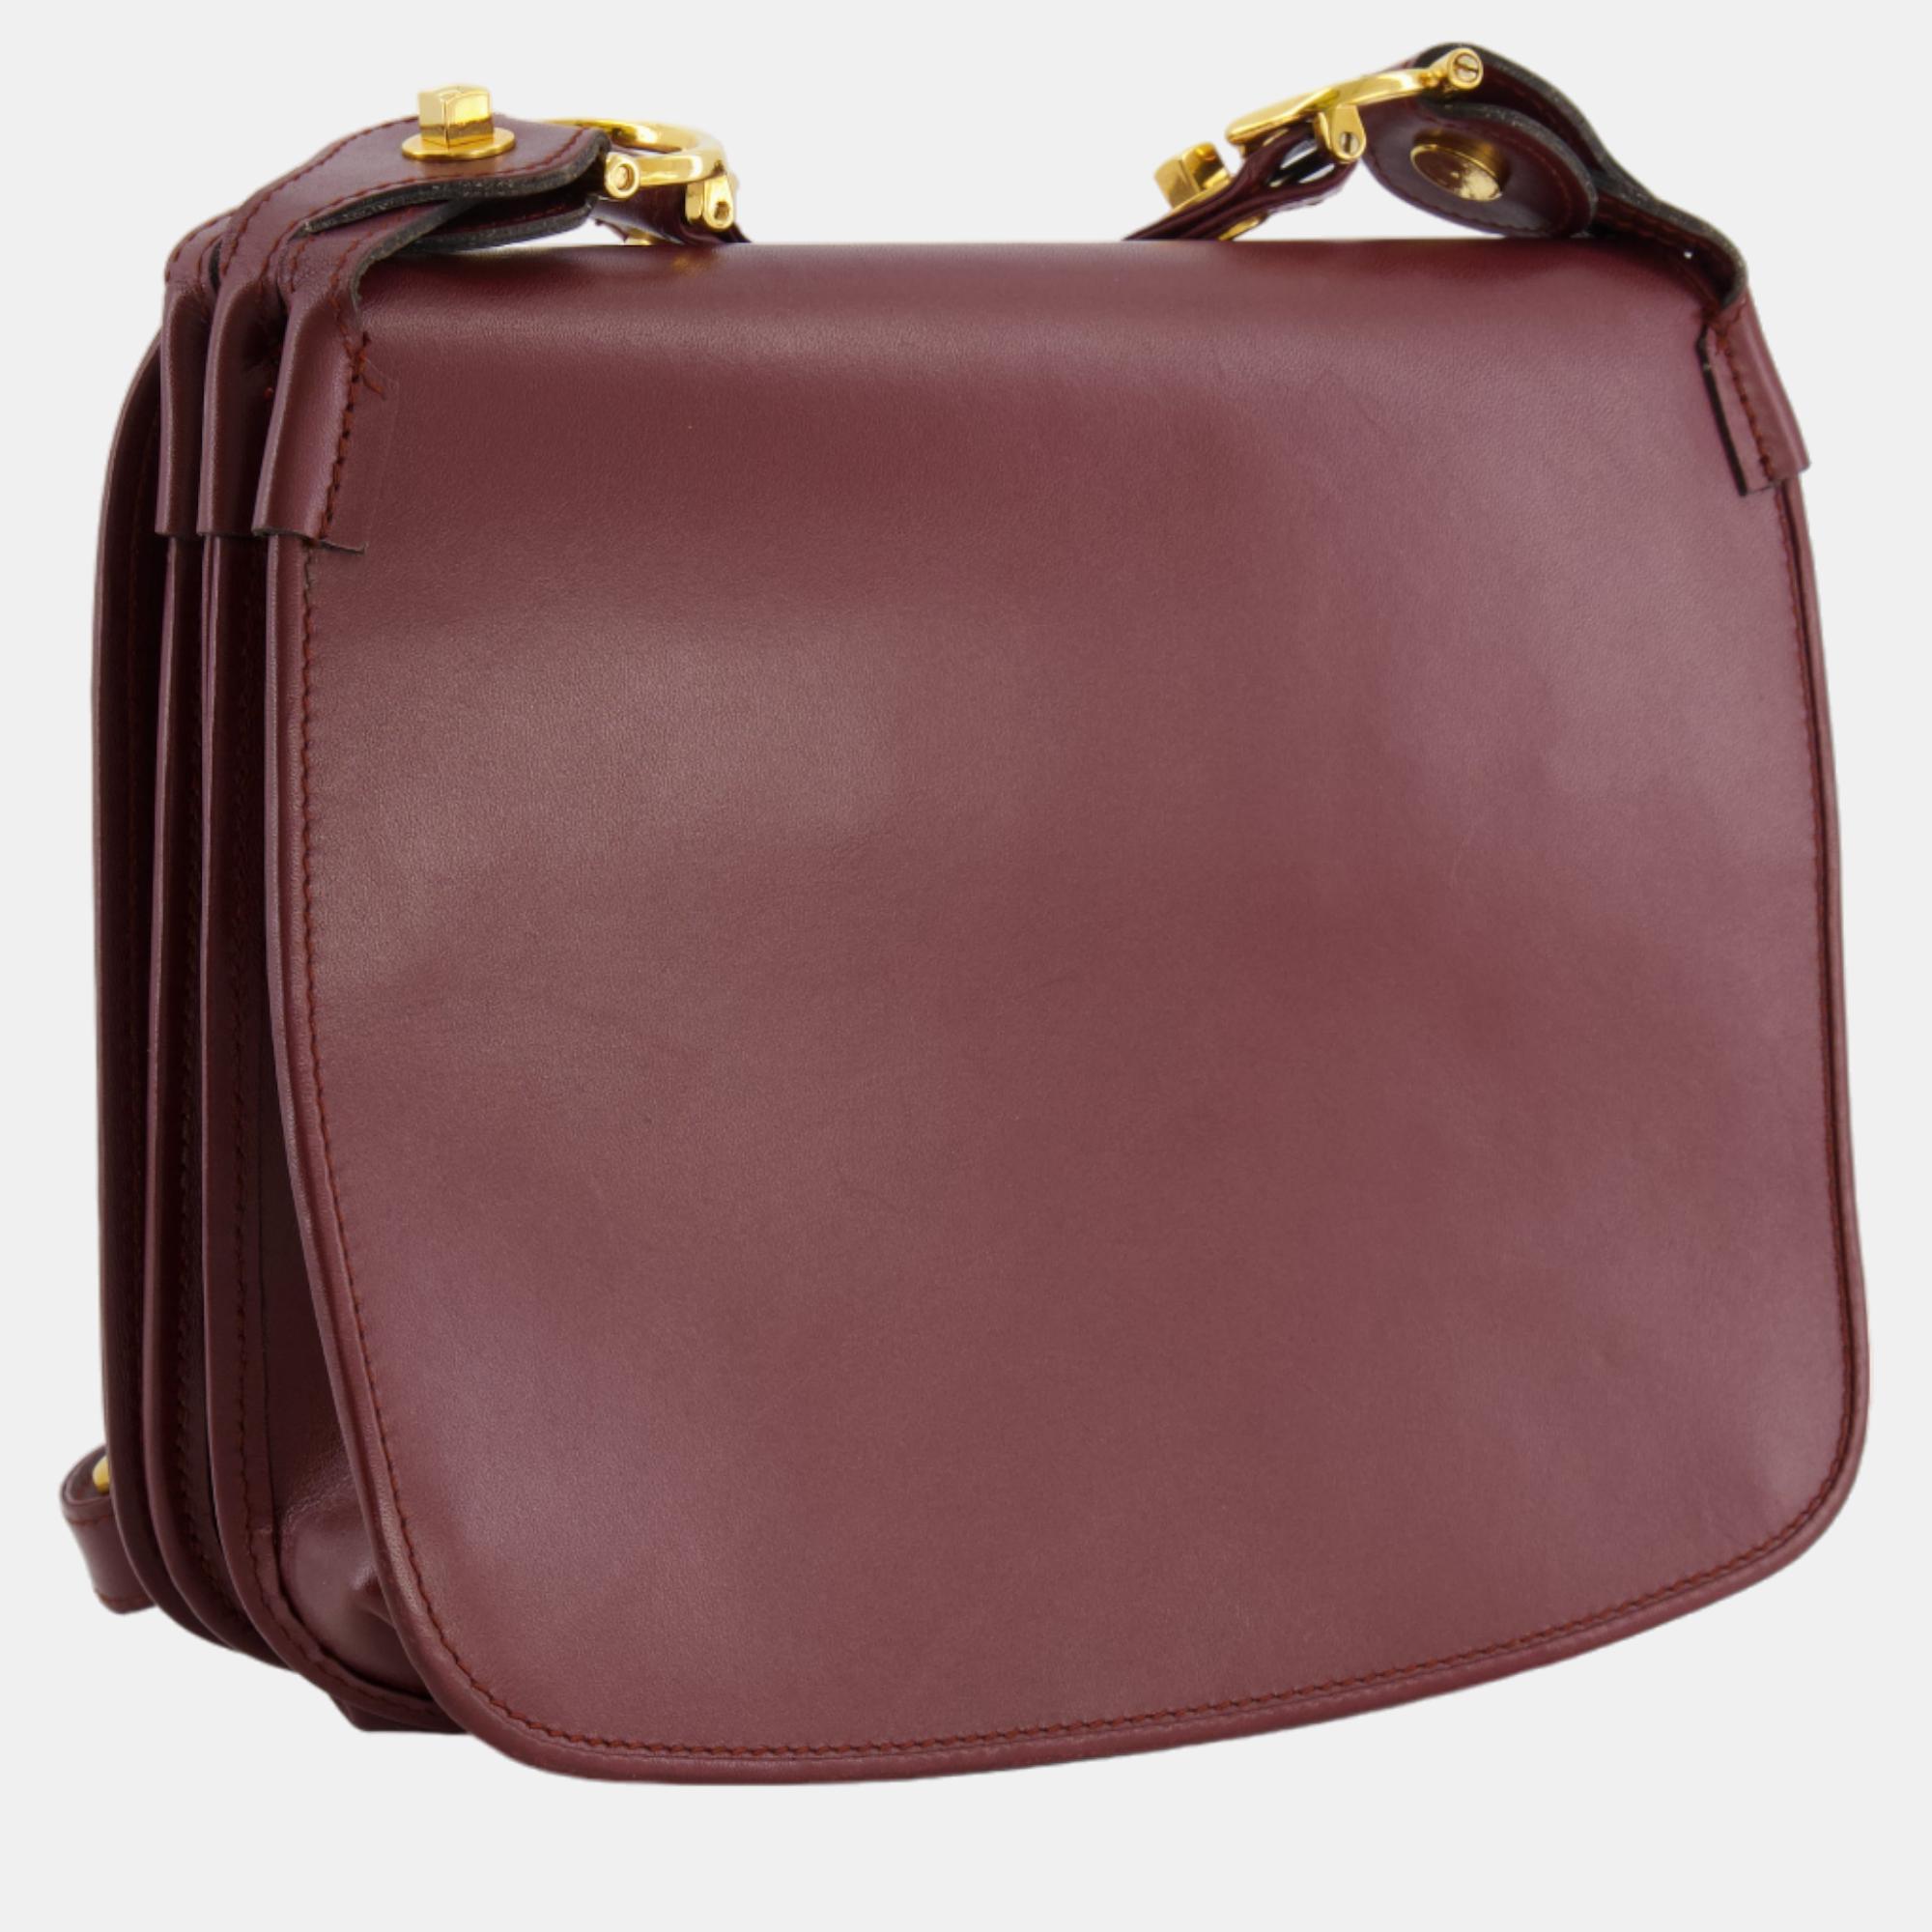 Cartier Vintage Burgundy Must De Cartier Leather Shoulder Bag With Gold Hardware